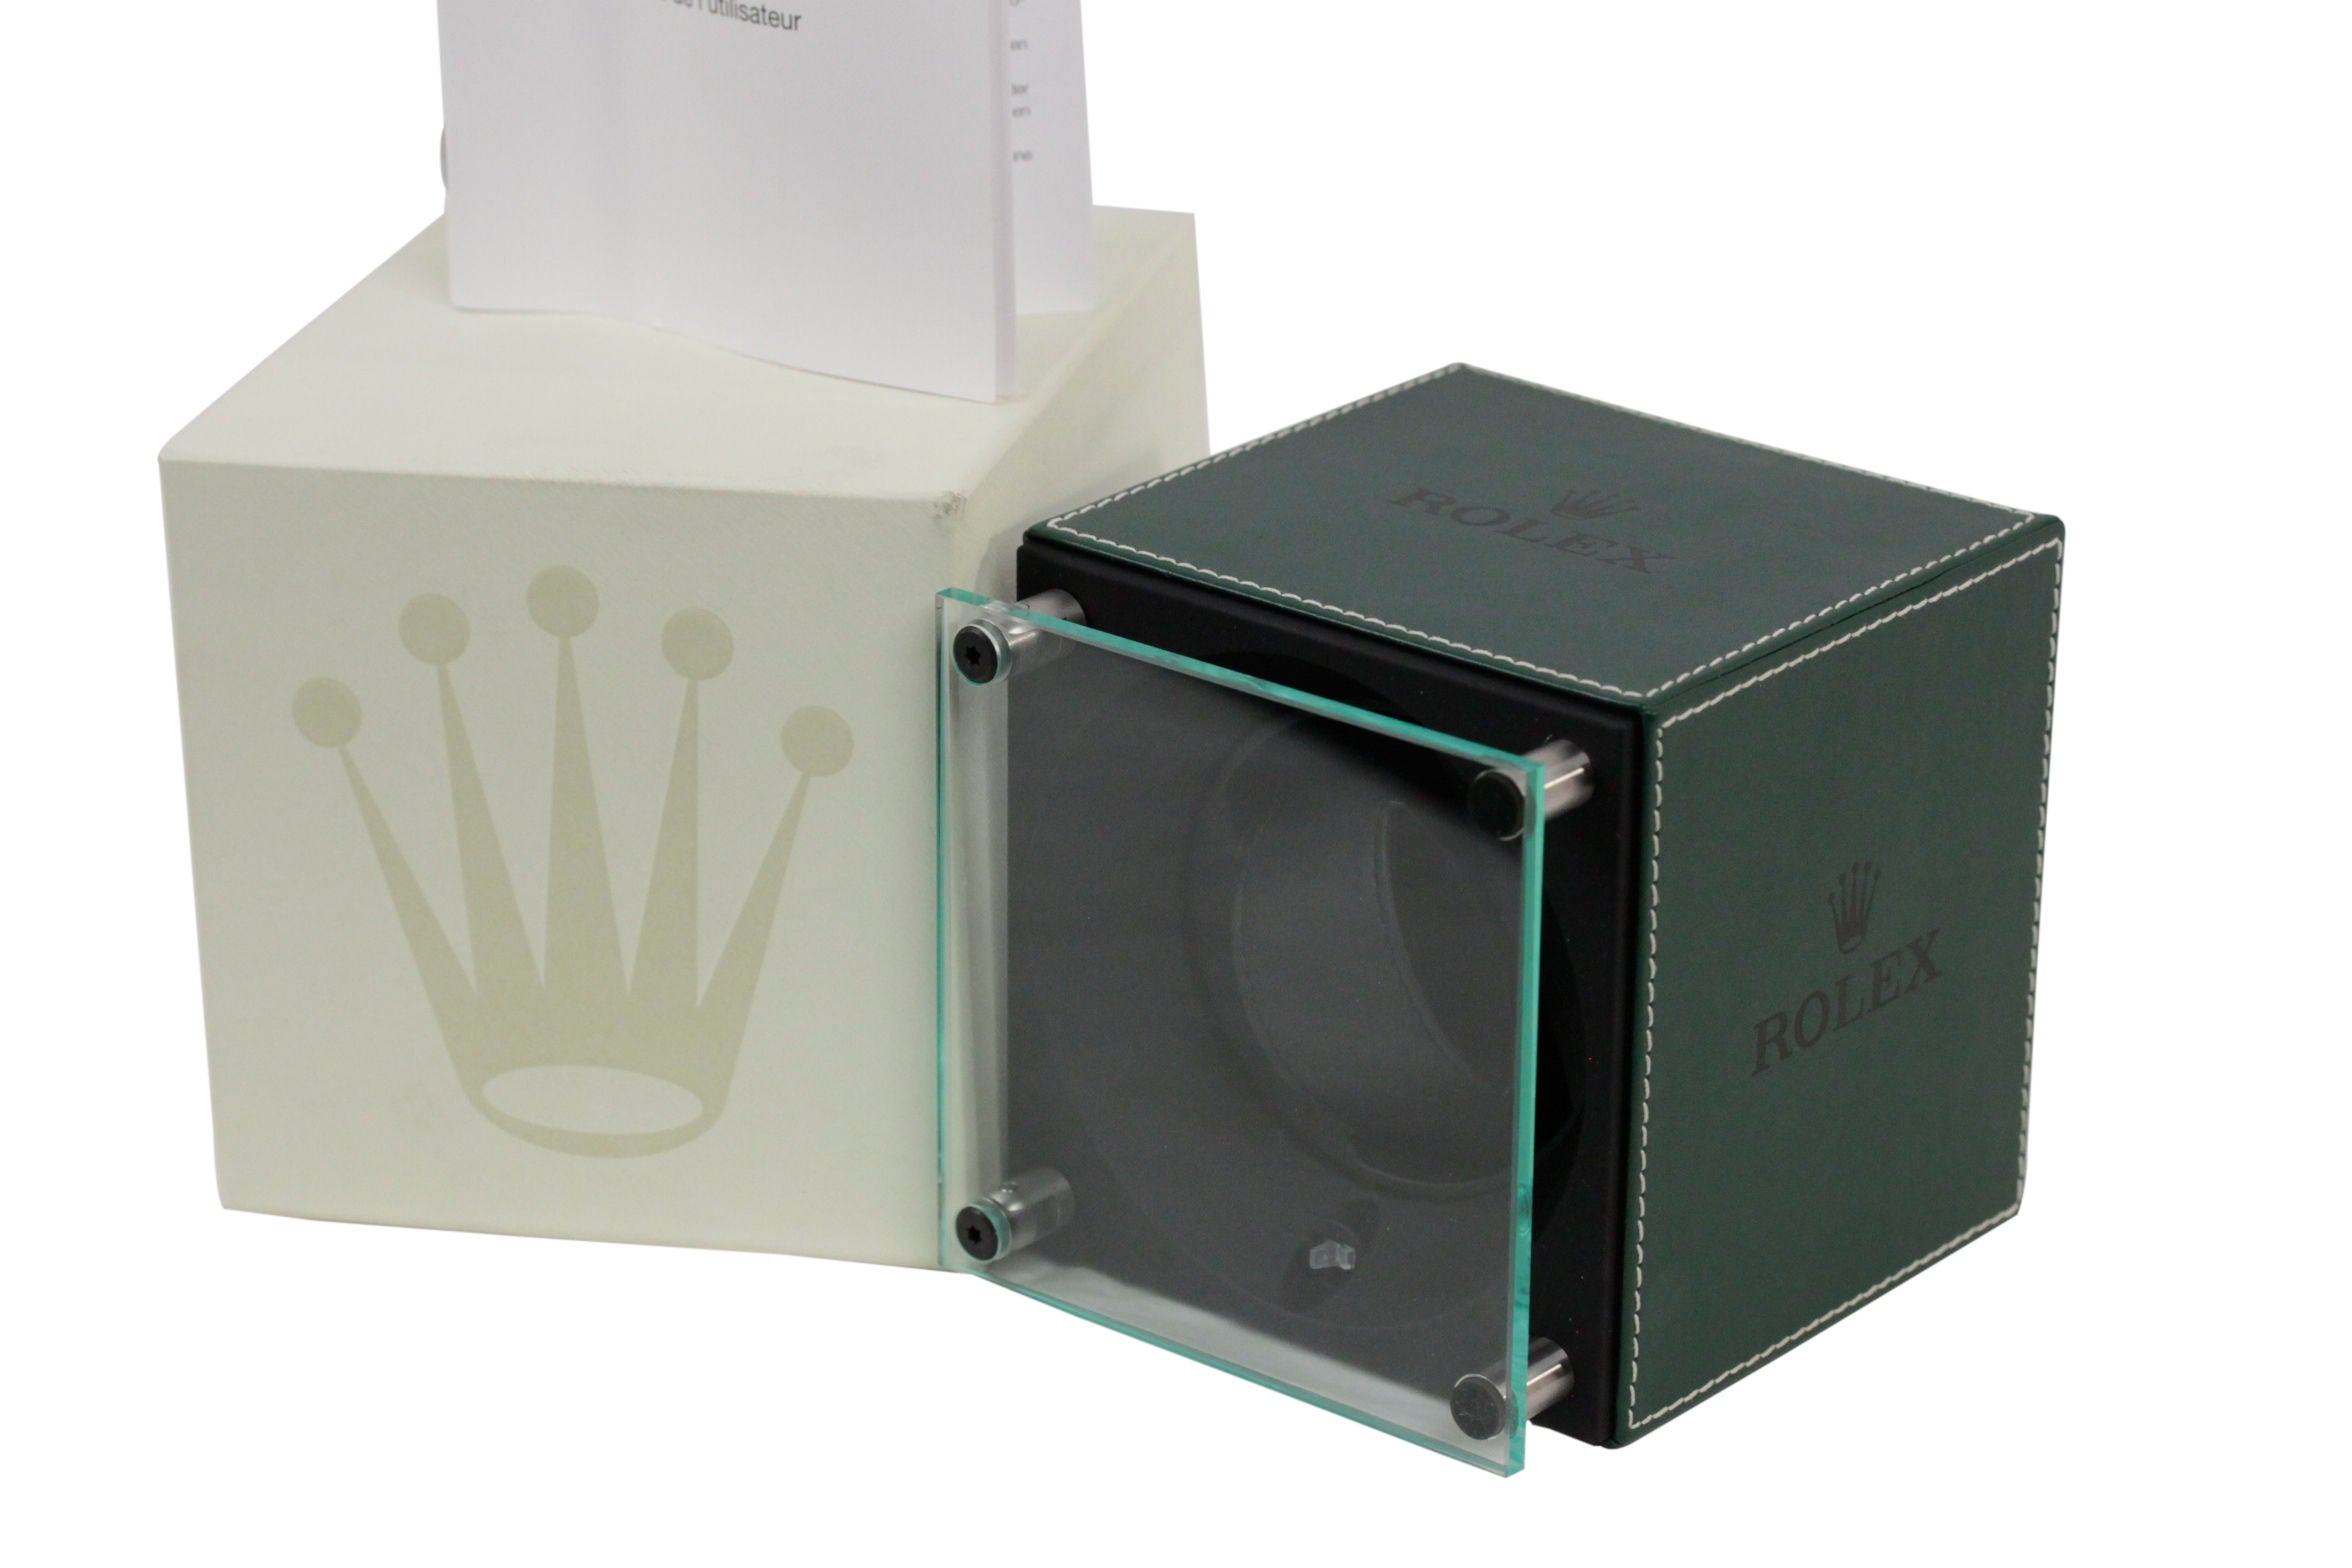 ROLEX Green Leather WATCH WINDER Swiss Made CASE w/ BOX Rare at 1stDibs | rolex  watch winder, rolex winder box, rolex watch winder box